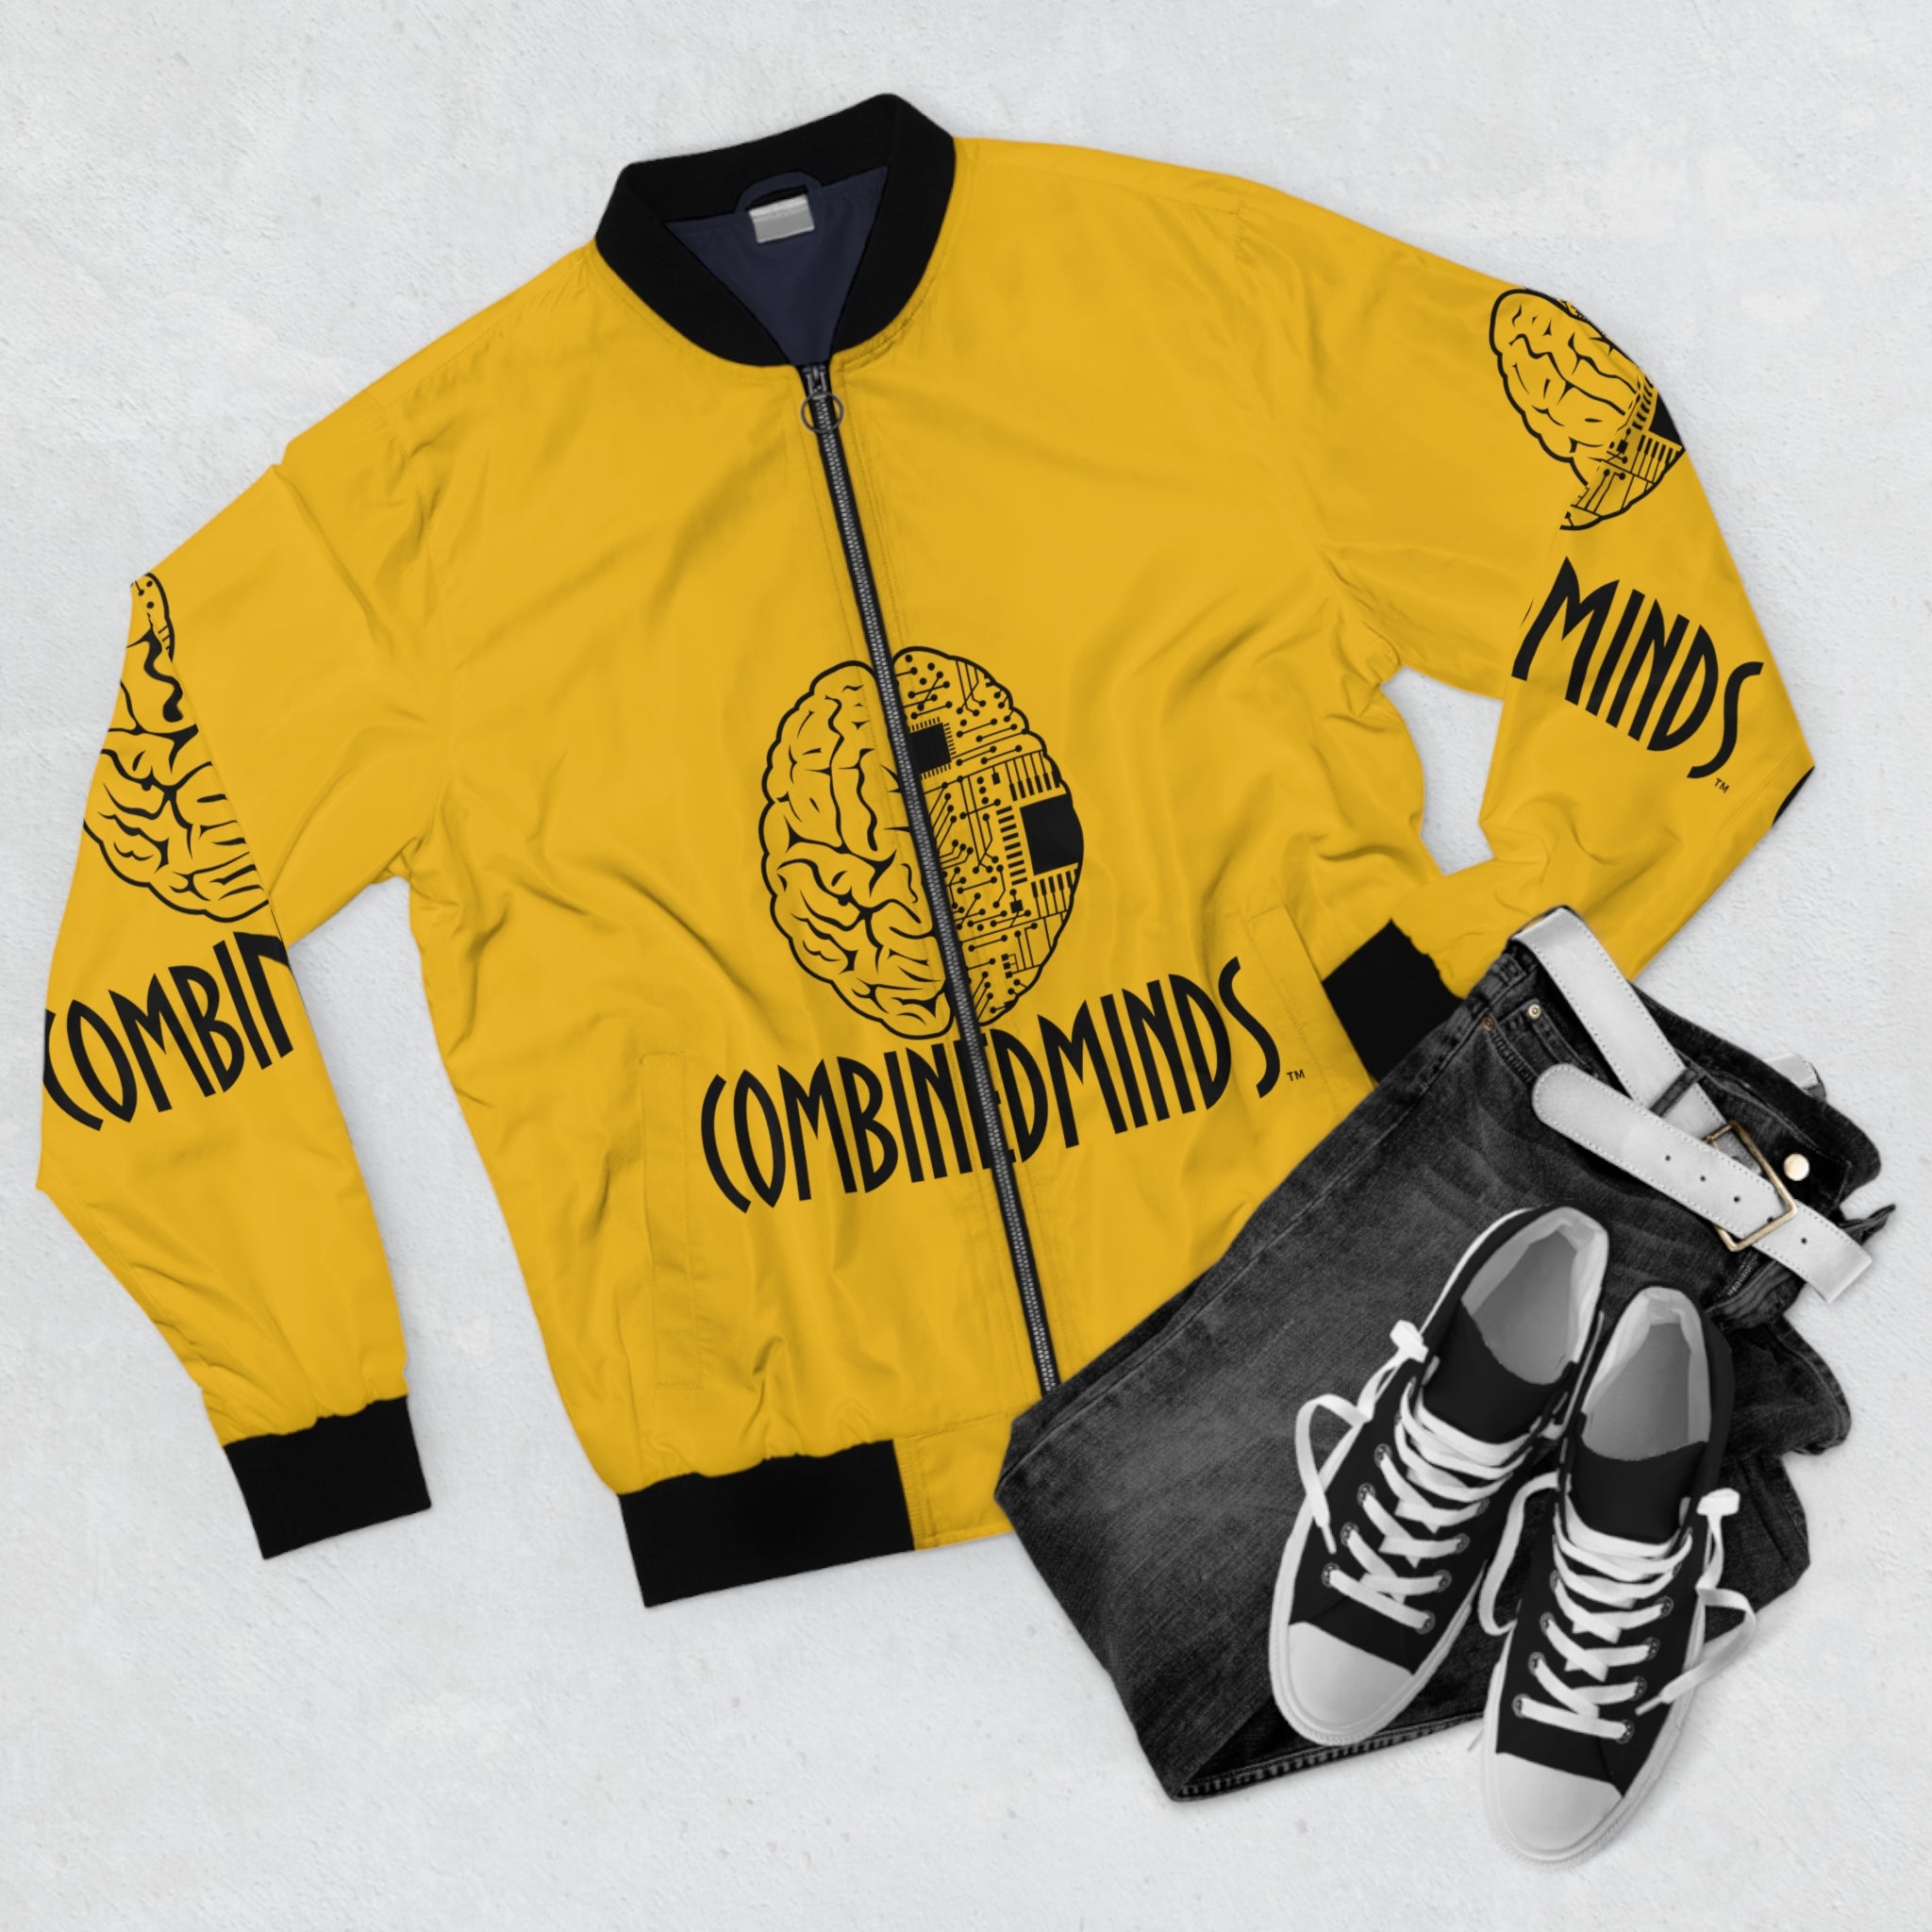 CombinedMinds Bomber Jacket - Yellow/Black Logo